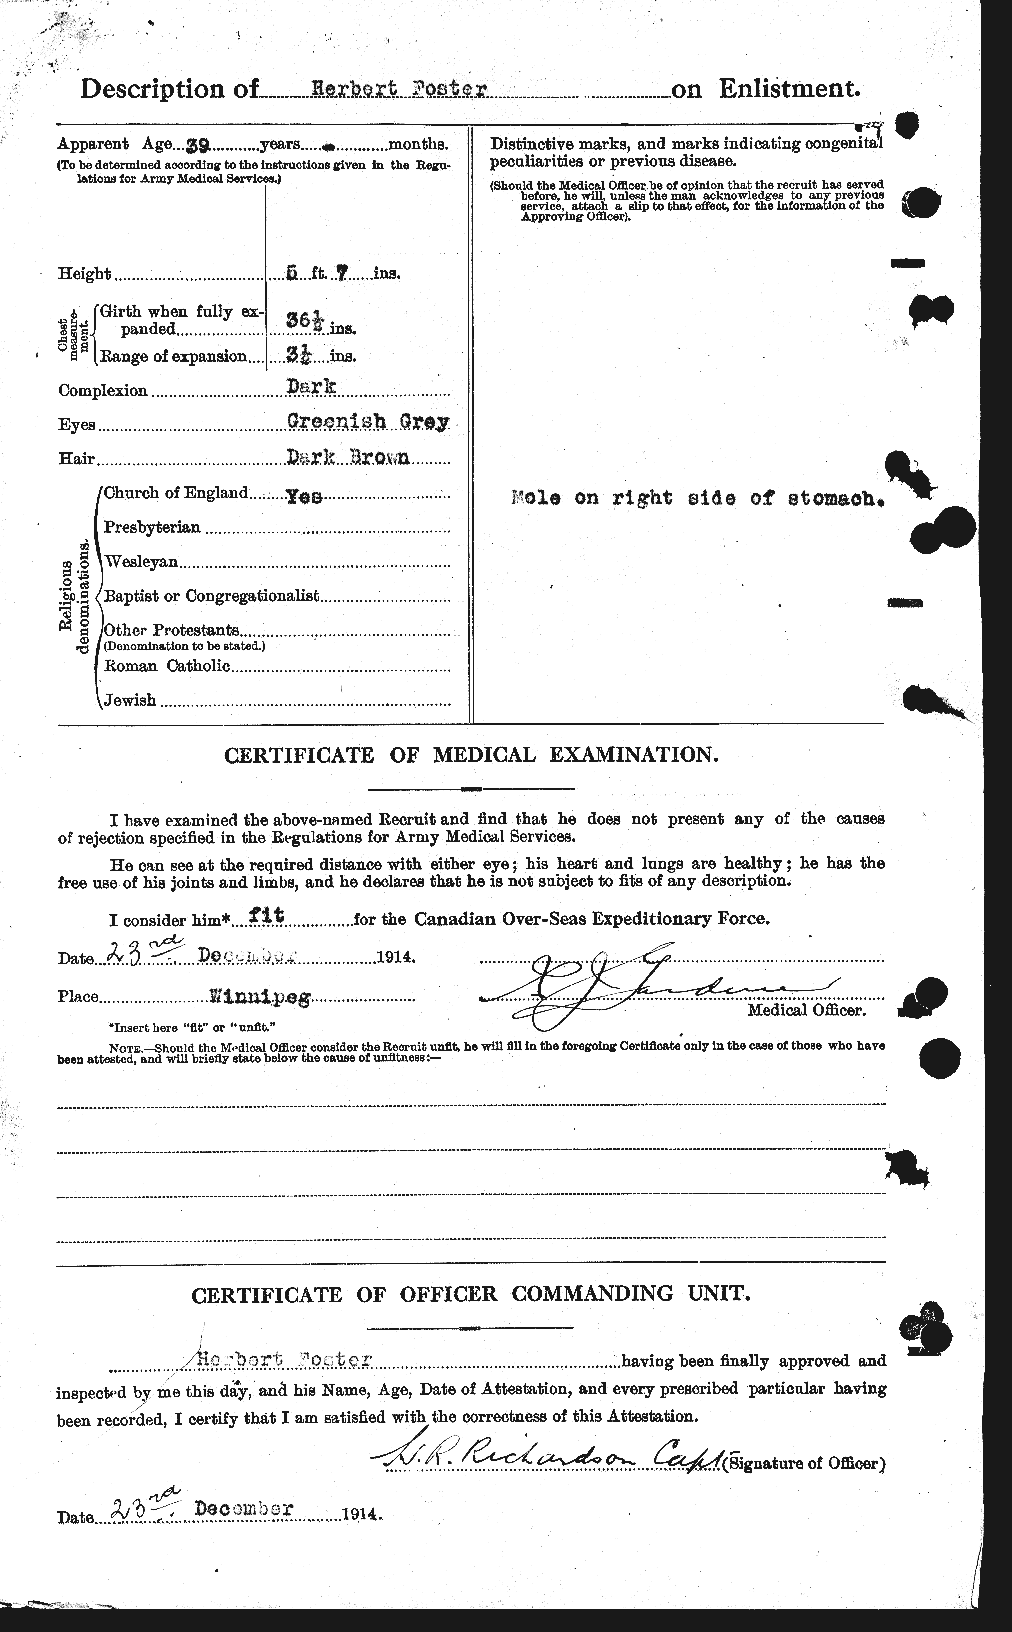 Dossiers du Personnel de la Première Guerre mondiale - CEC 333255b